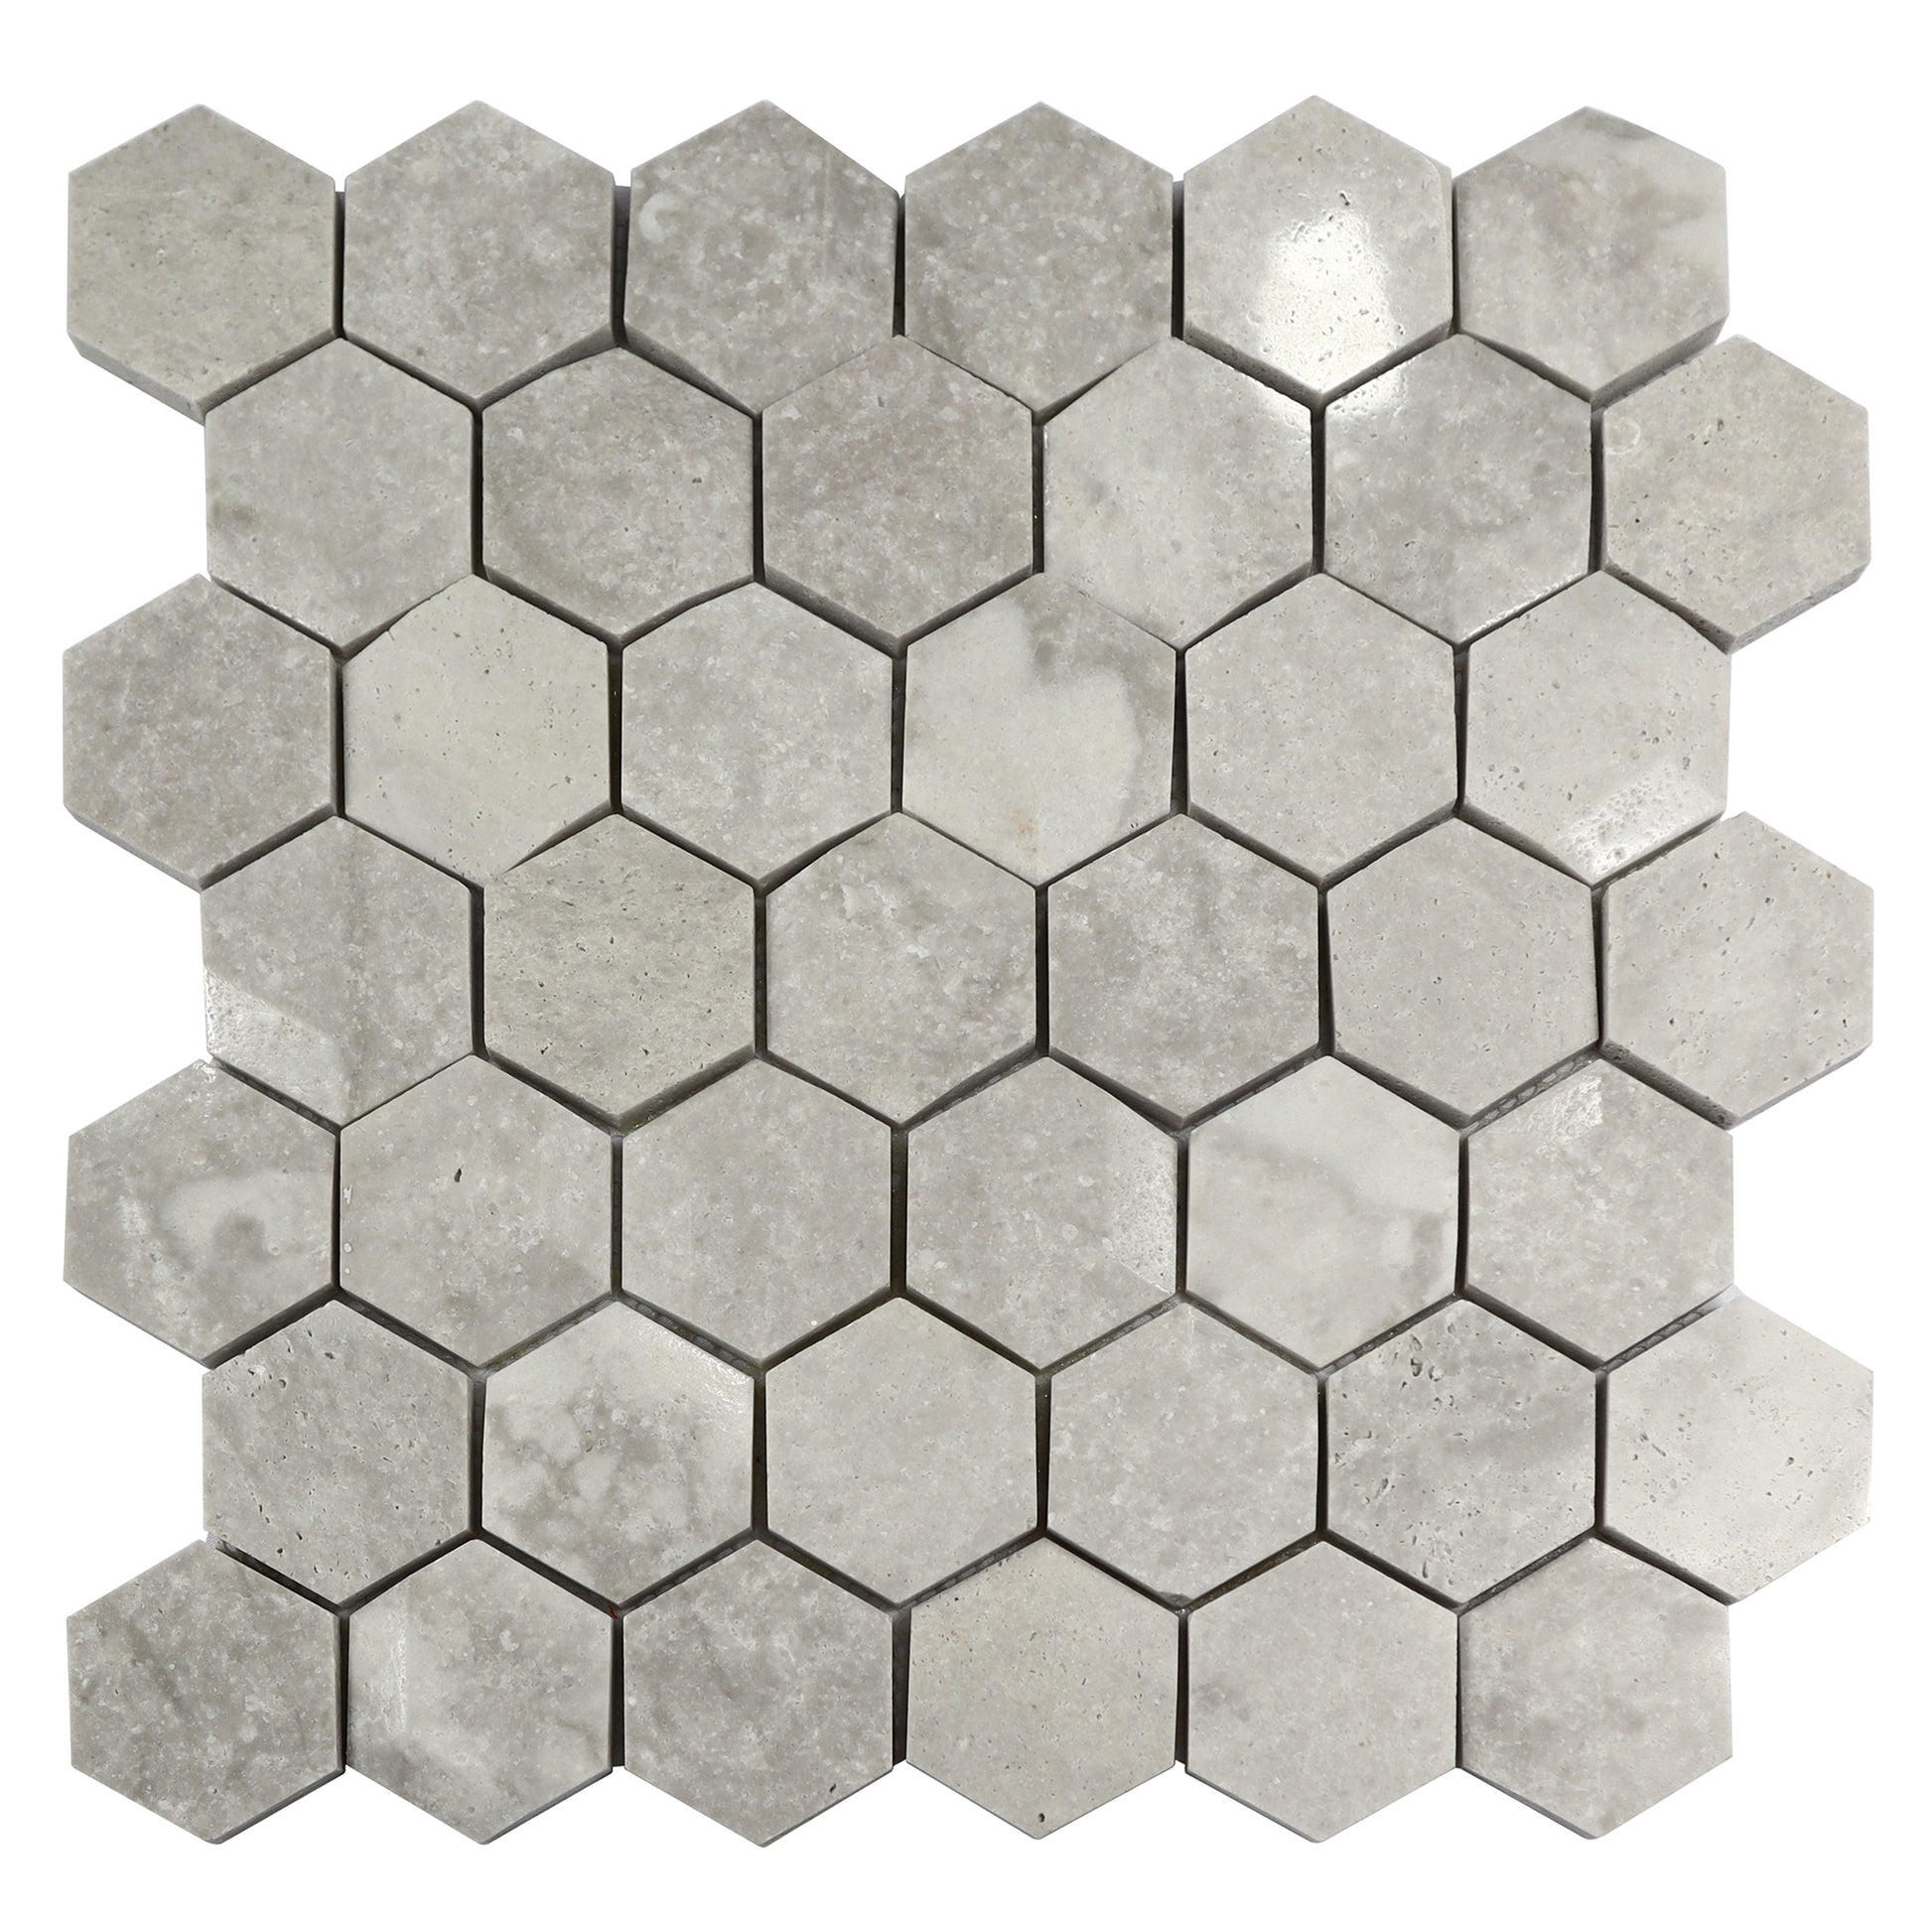 Hexagon Natural Stone Wall Backsplash Floor Wall Tiles